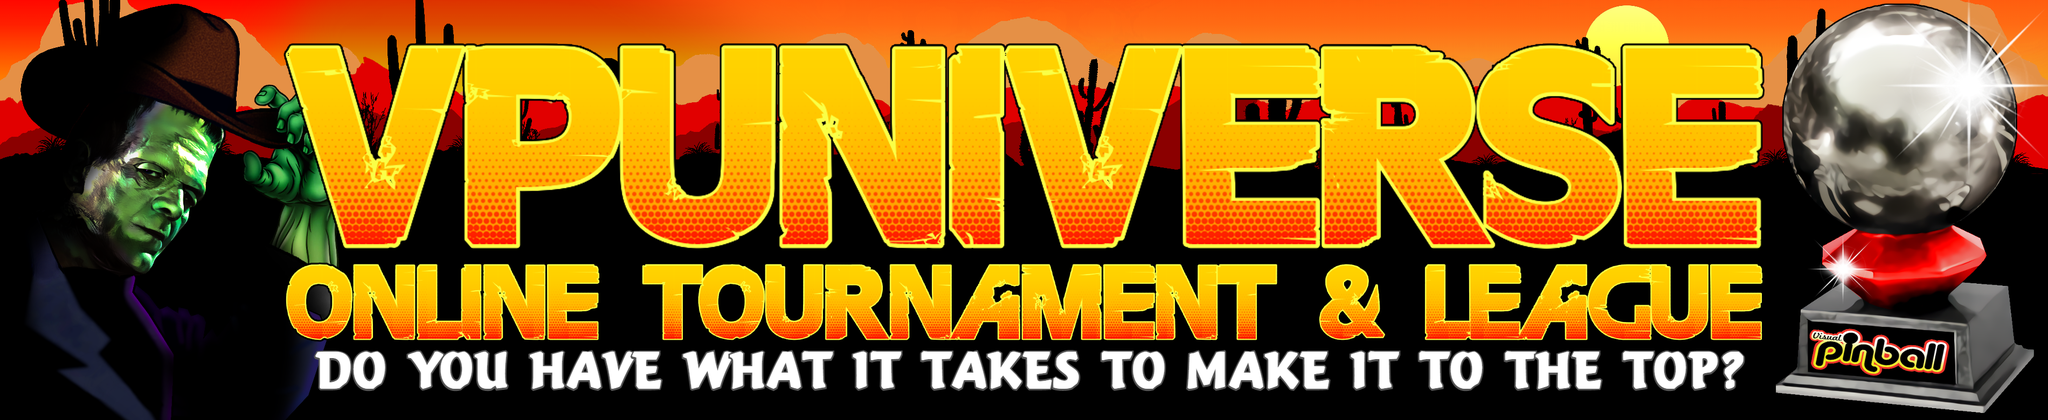 VPU Online Virtual Pinball Tournament & League